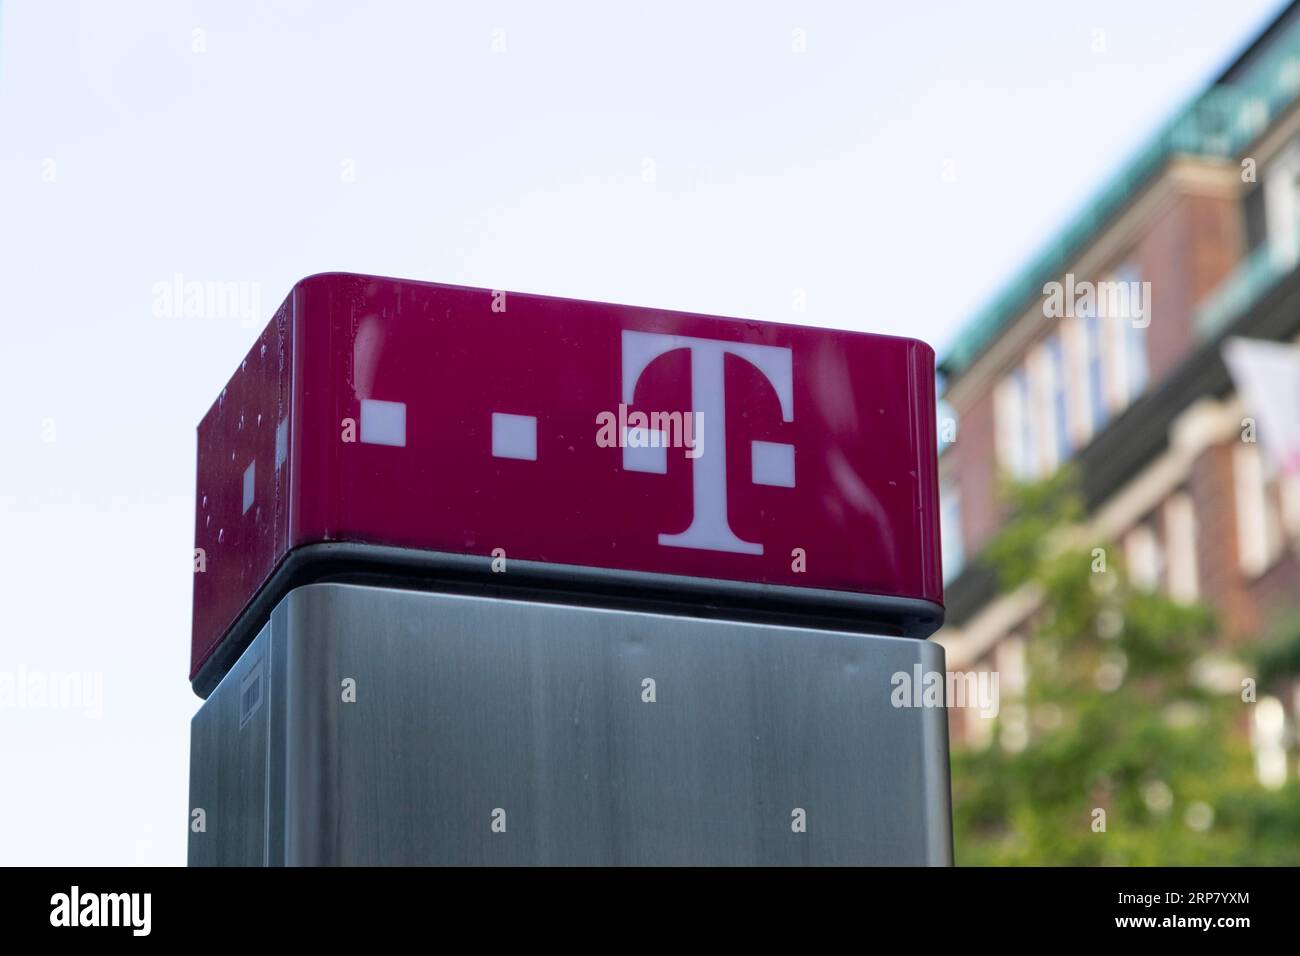 Immagine simbolica comunicazione, primo piano, logo di Telekom su una cabina telefonica nel centro di Amburgo, Germania Foto Stock